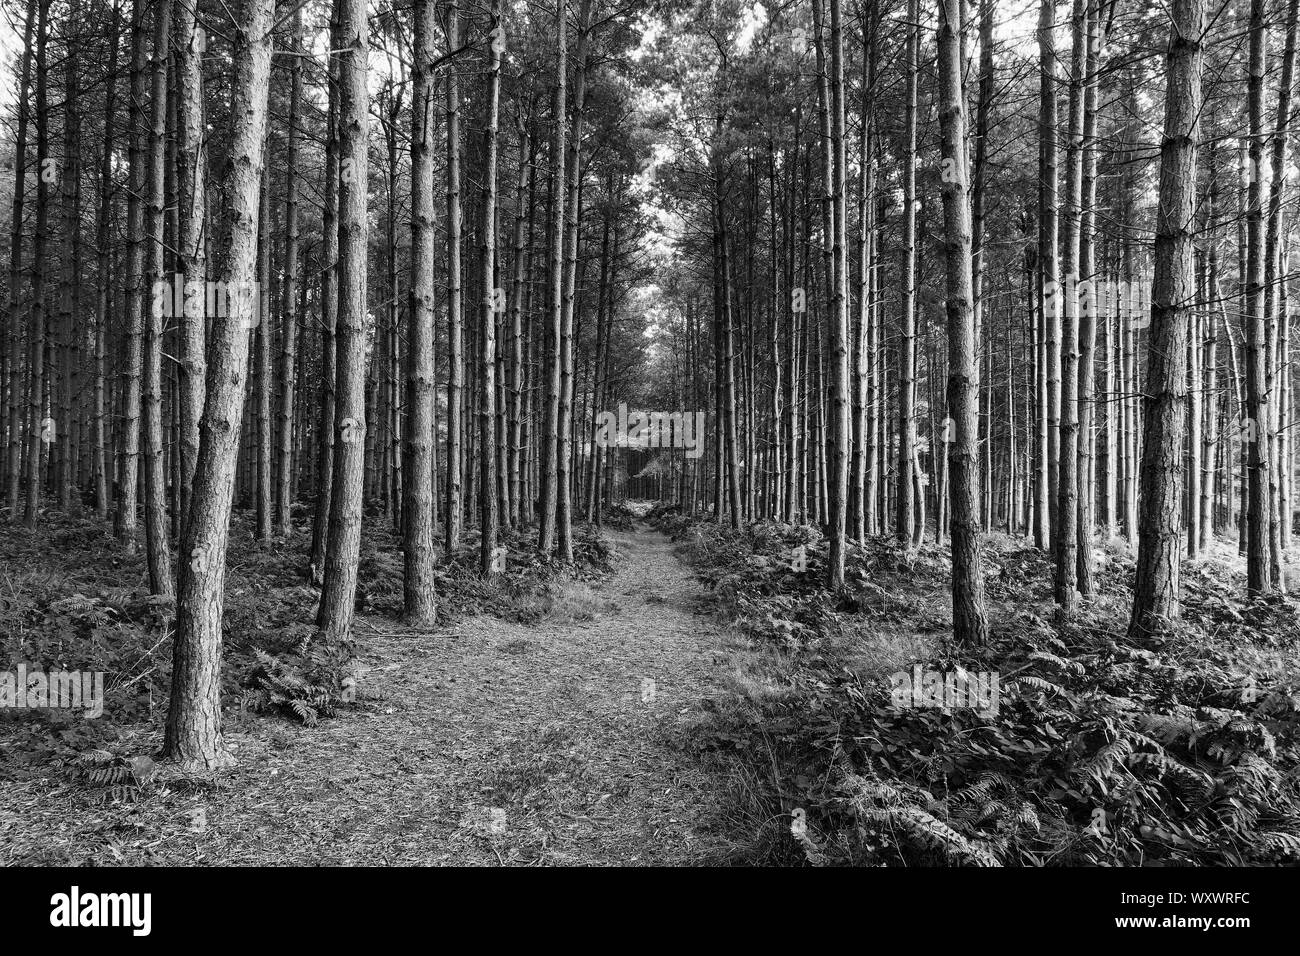 Sur Cannock Chase dans le Staffordshire, un large sentier mène tout droit à travers une forêt sombre de grands arbres de pin sylvestre - image en noir et blanc Banque D'Images